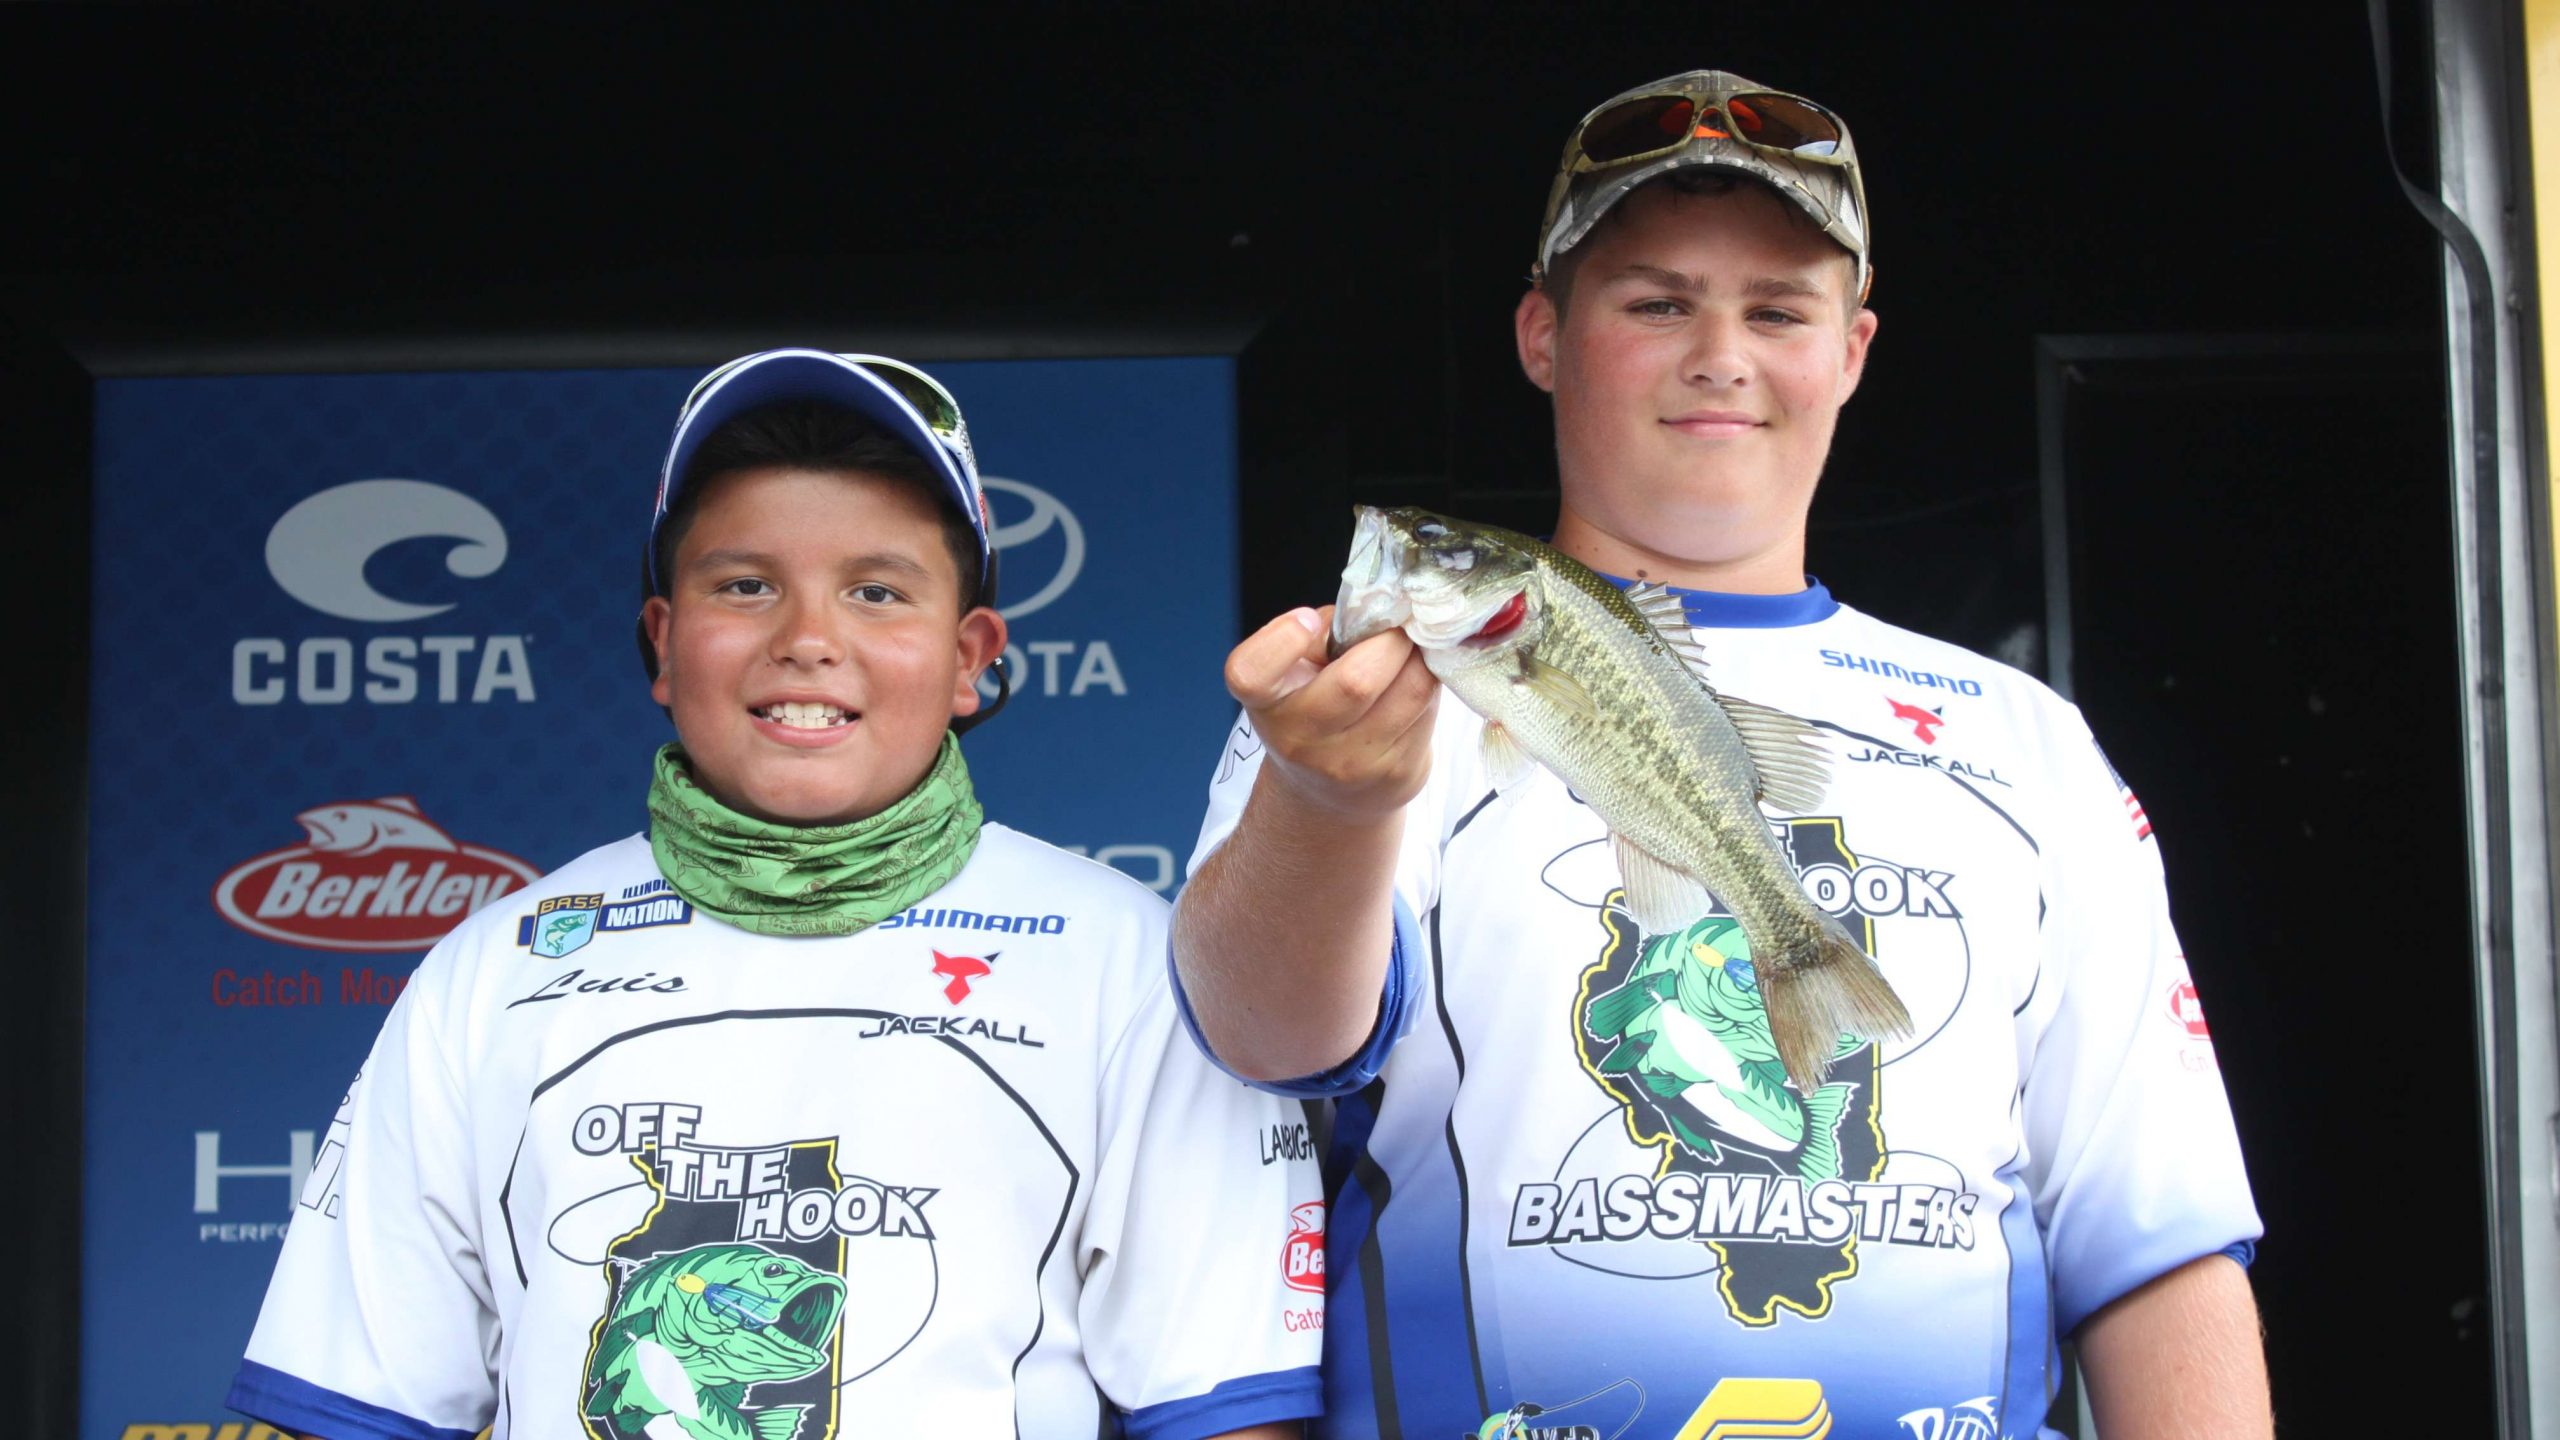 Team Illinoisâ Dylan Draper and Luis Flores are in 24th place with one fish that weighed 14 ounces.